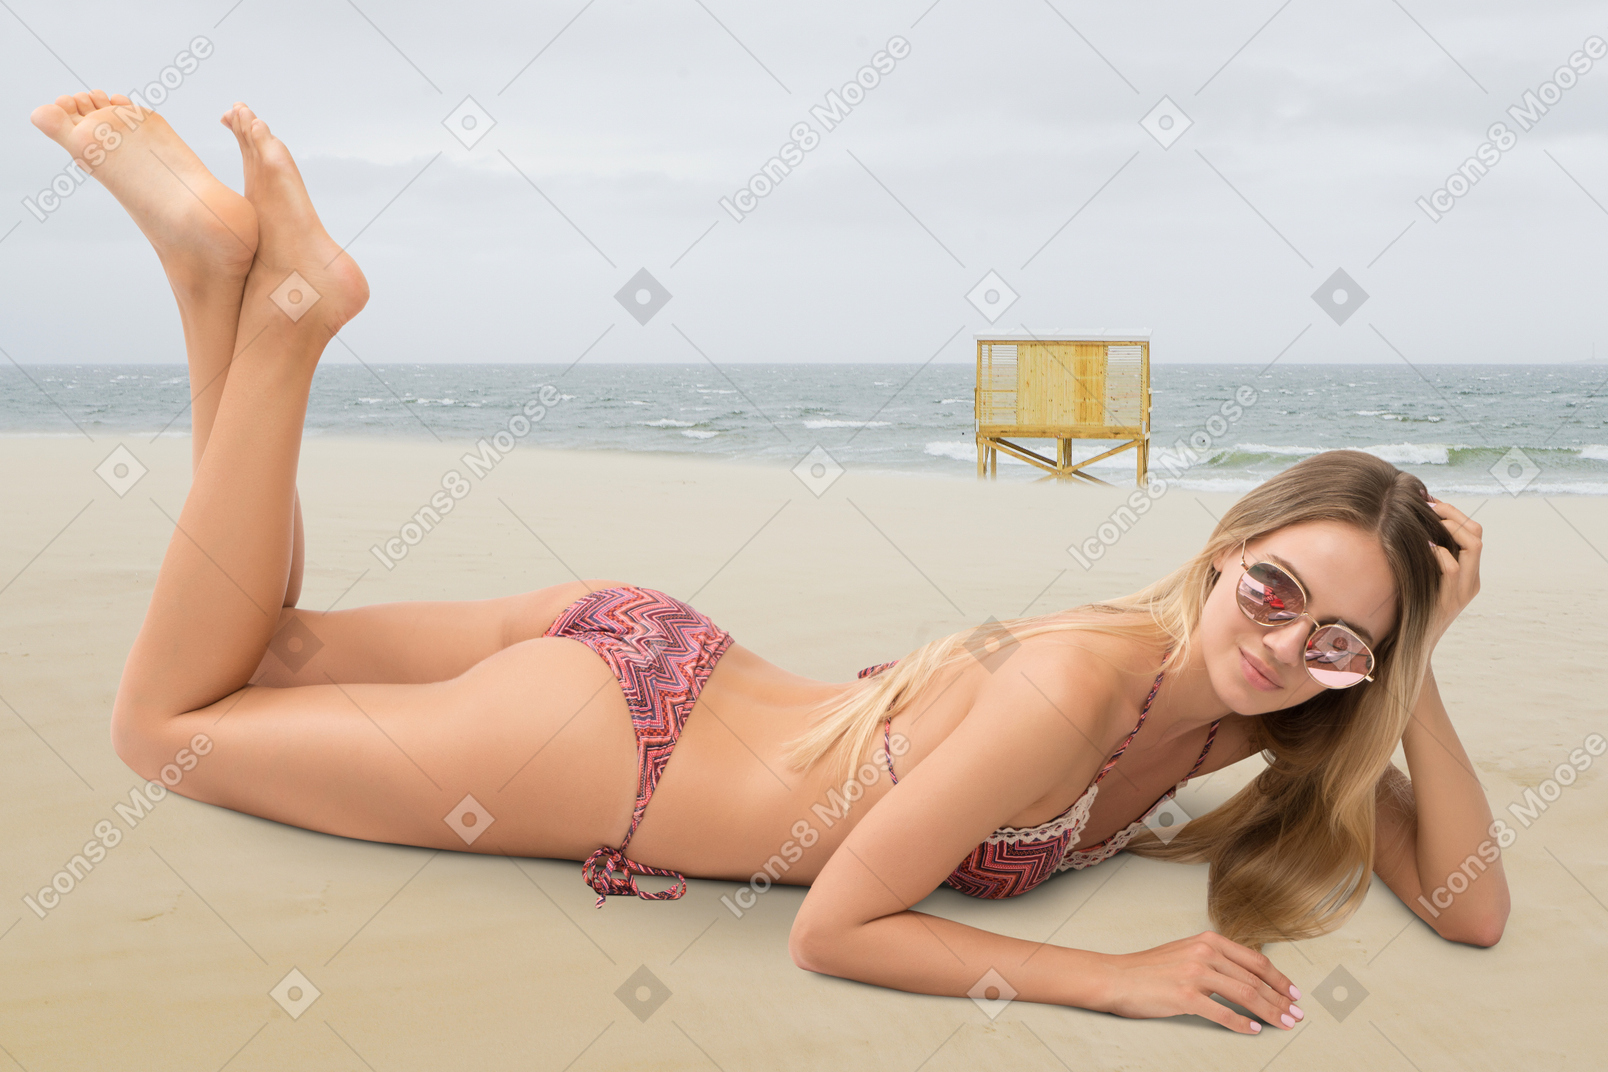 A woman in a bikini lying on the beach